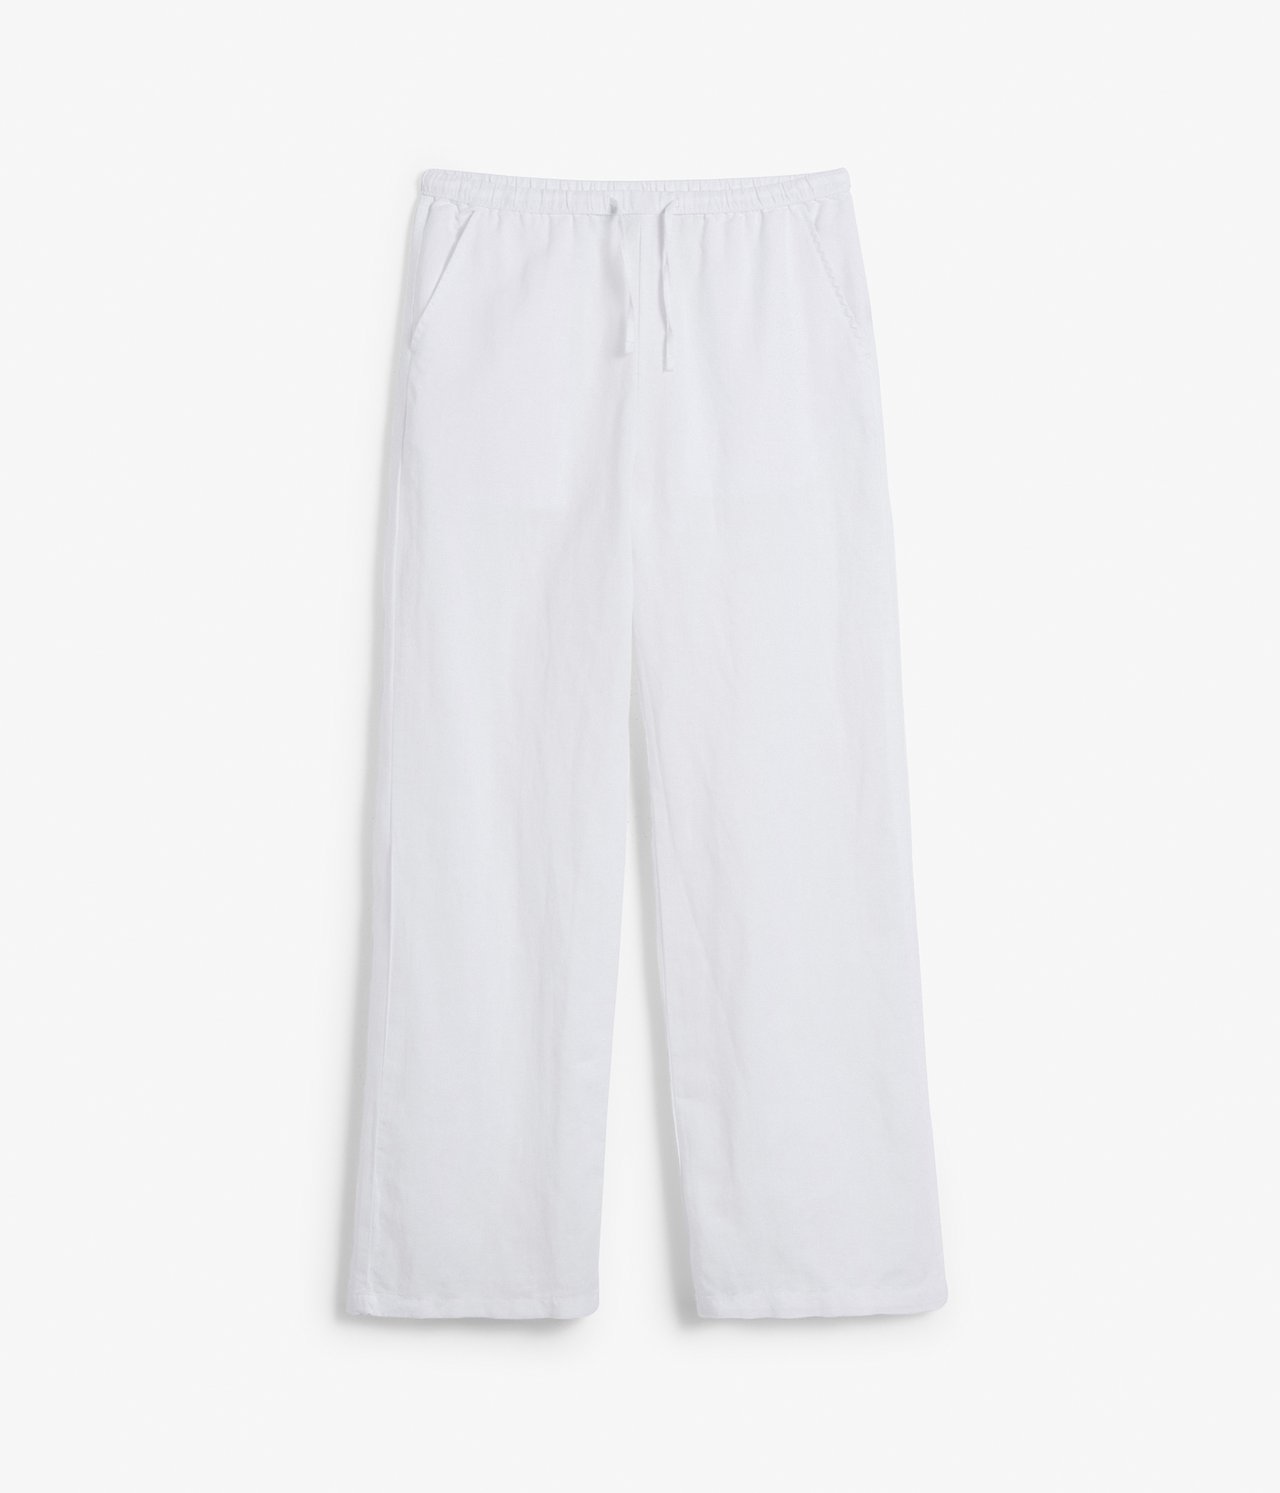 Spodnie z mieszanki lnu - Biały - 9